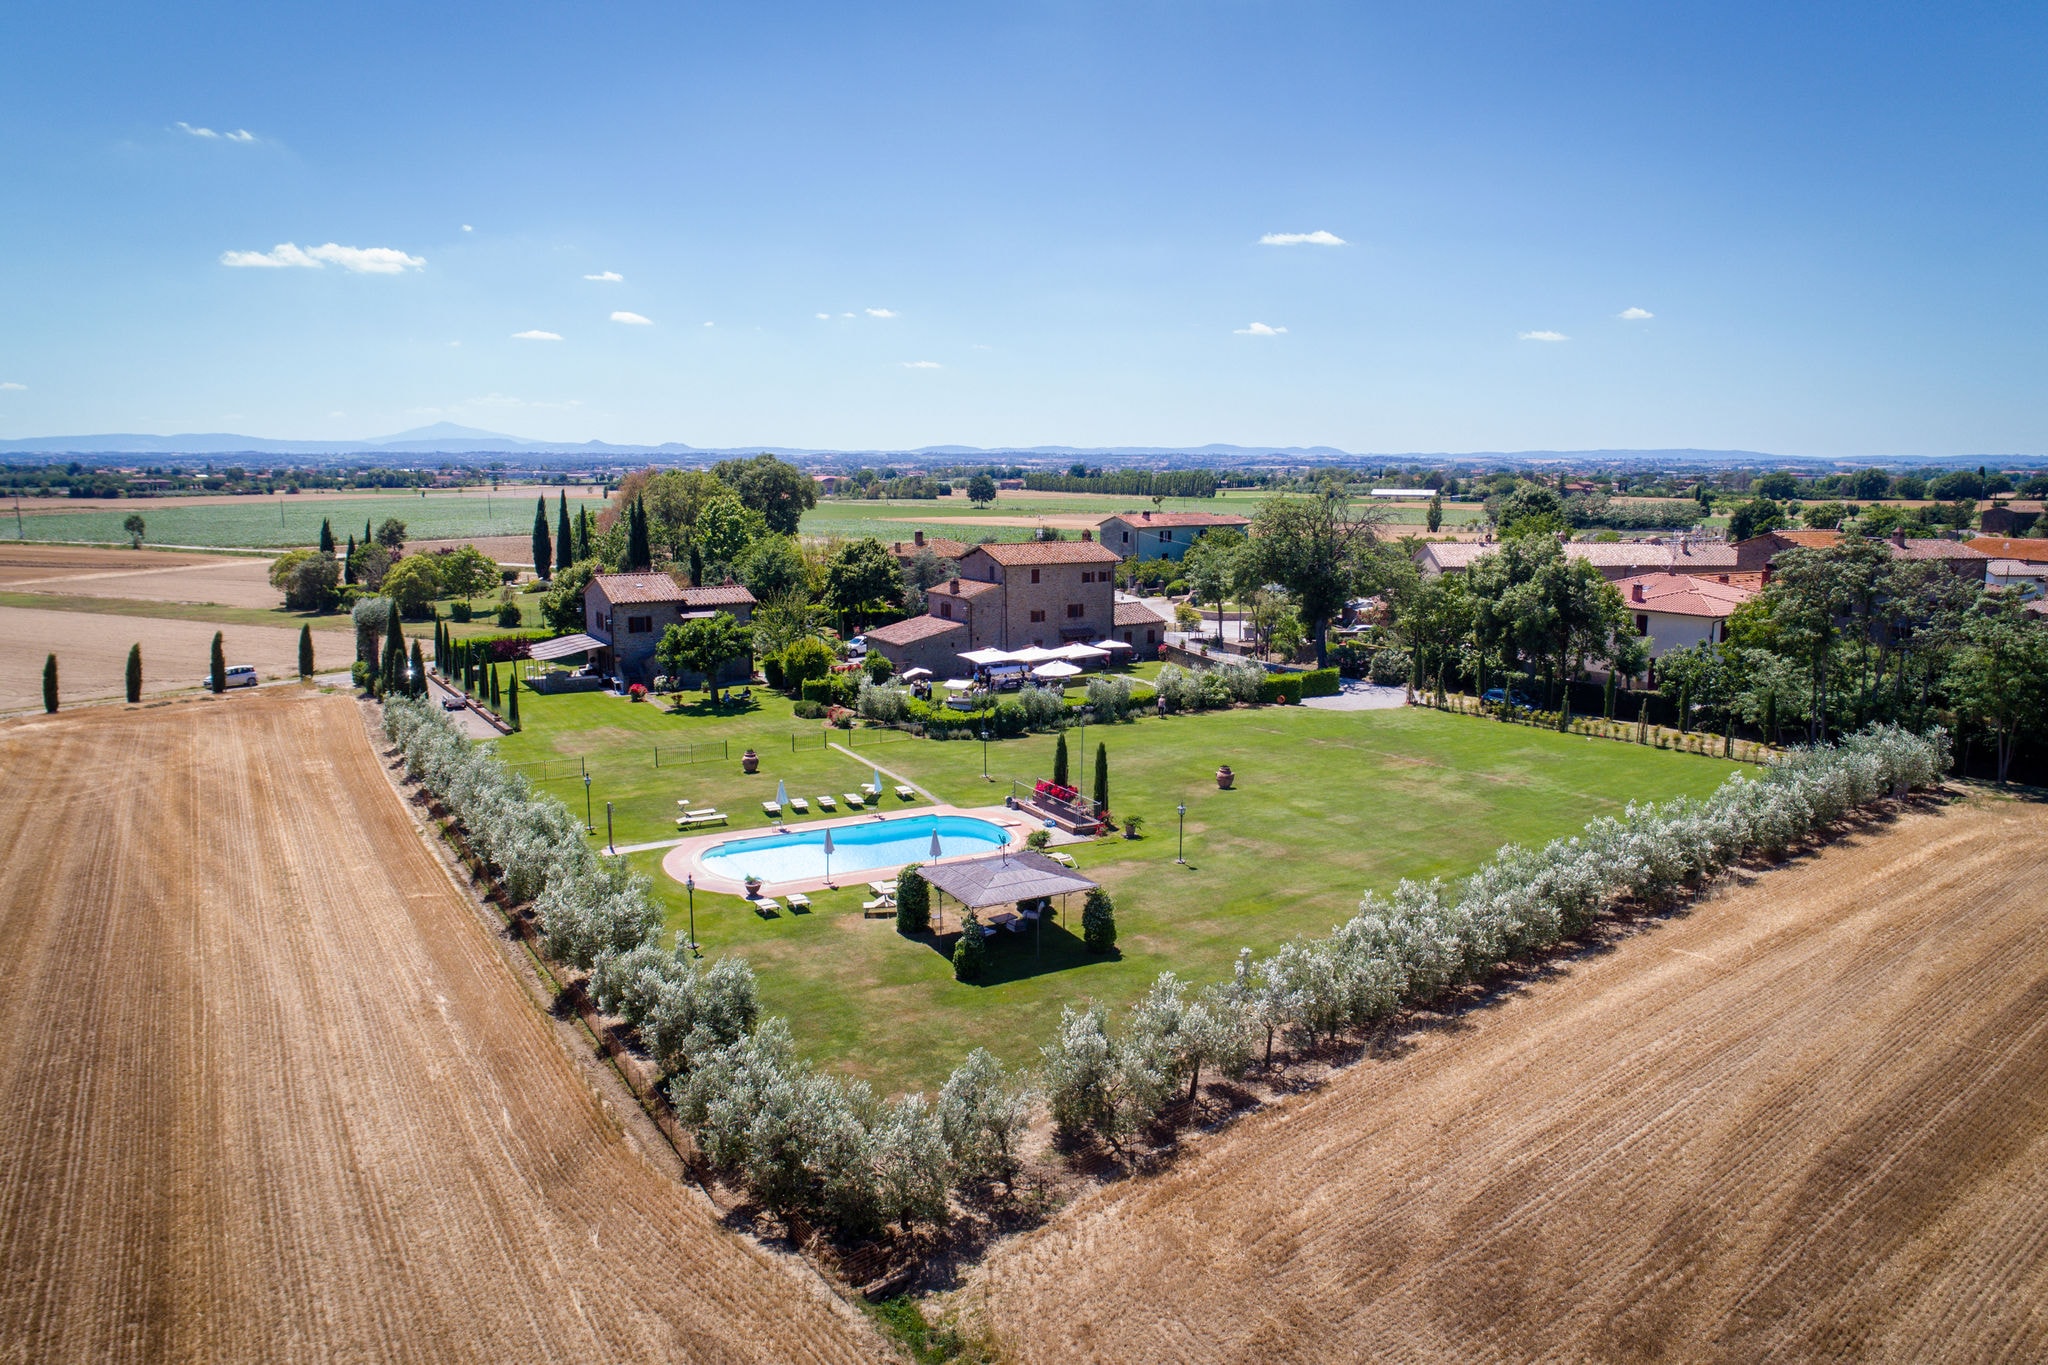 Agriturismo dichtbij Cortona met ruime tuin en zwembad